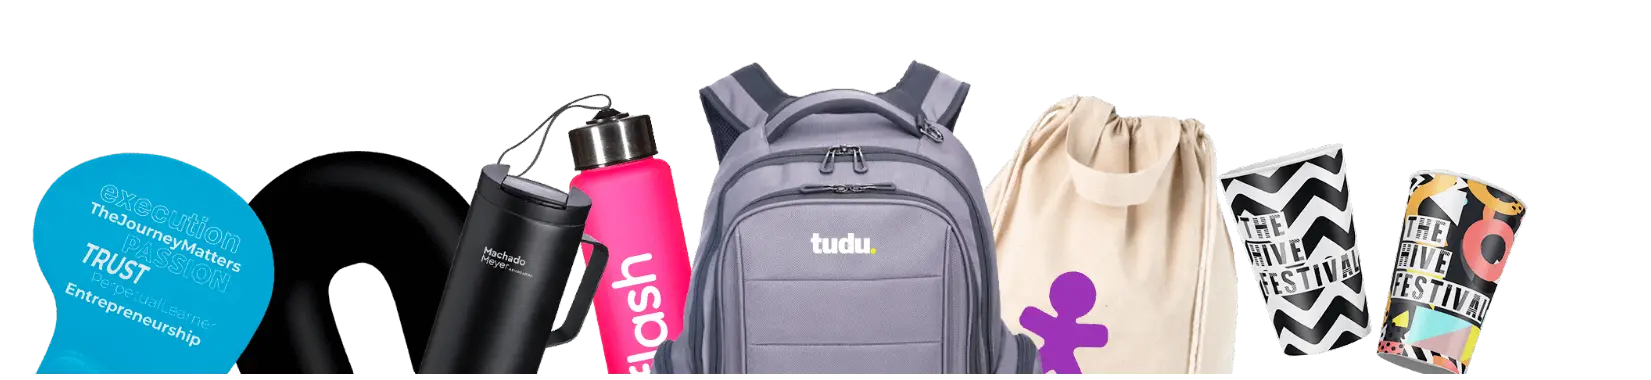 Banner mostrando os produtos da Tudu